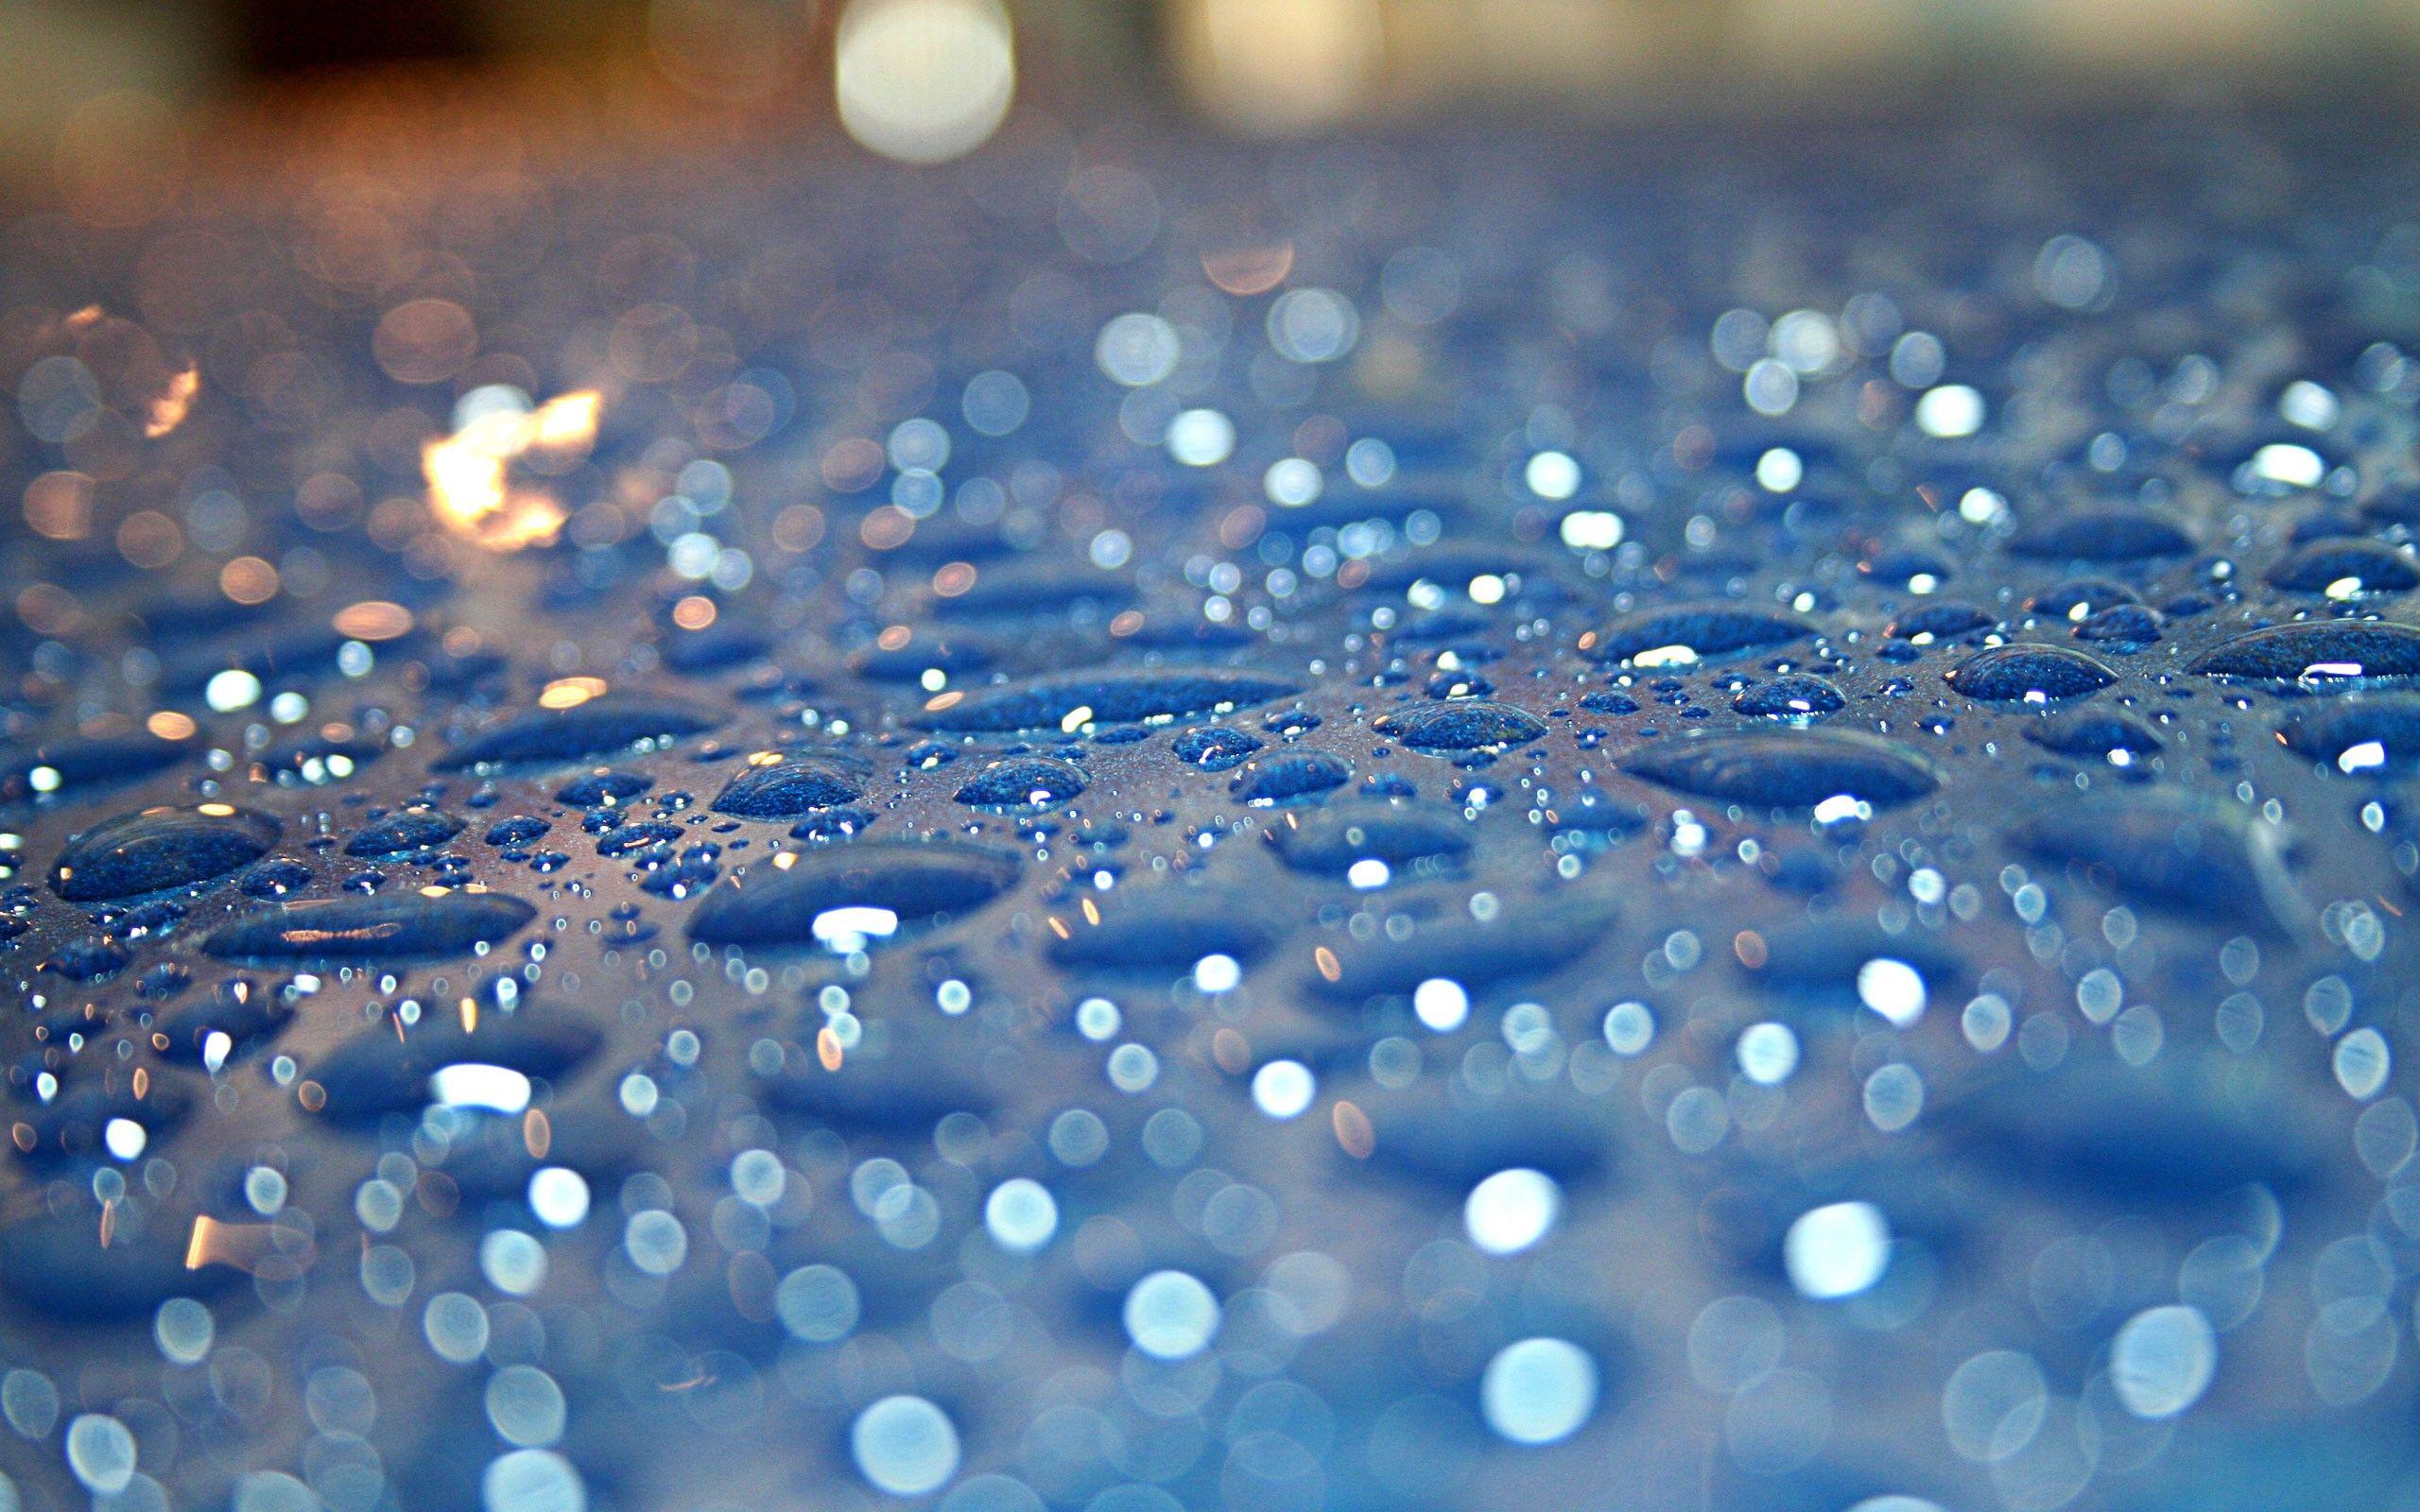 Blue Water Drops Wallpaper 560×600 Pixels. Wallpaper